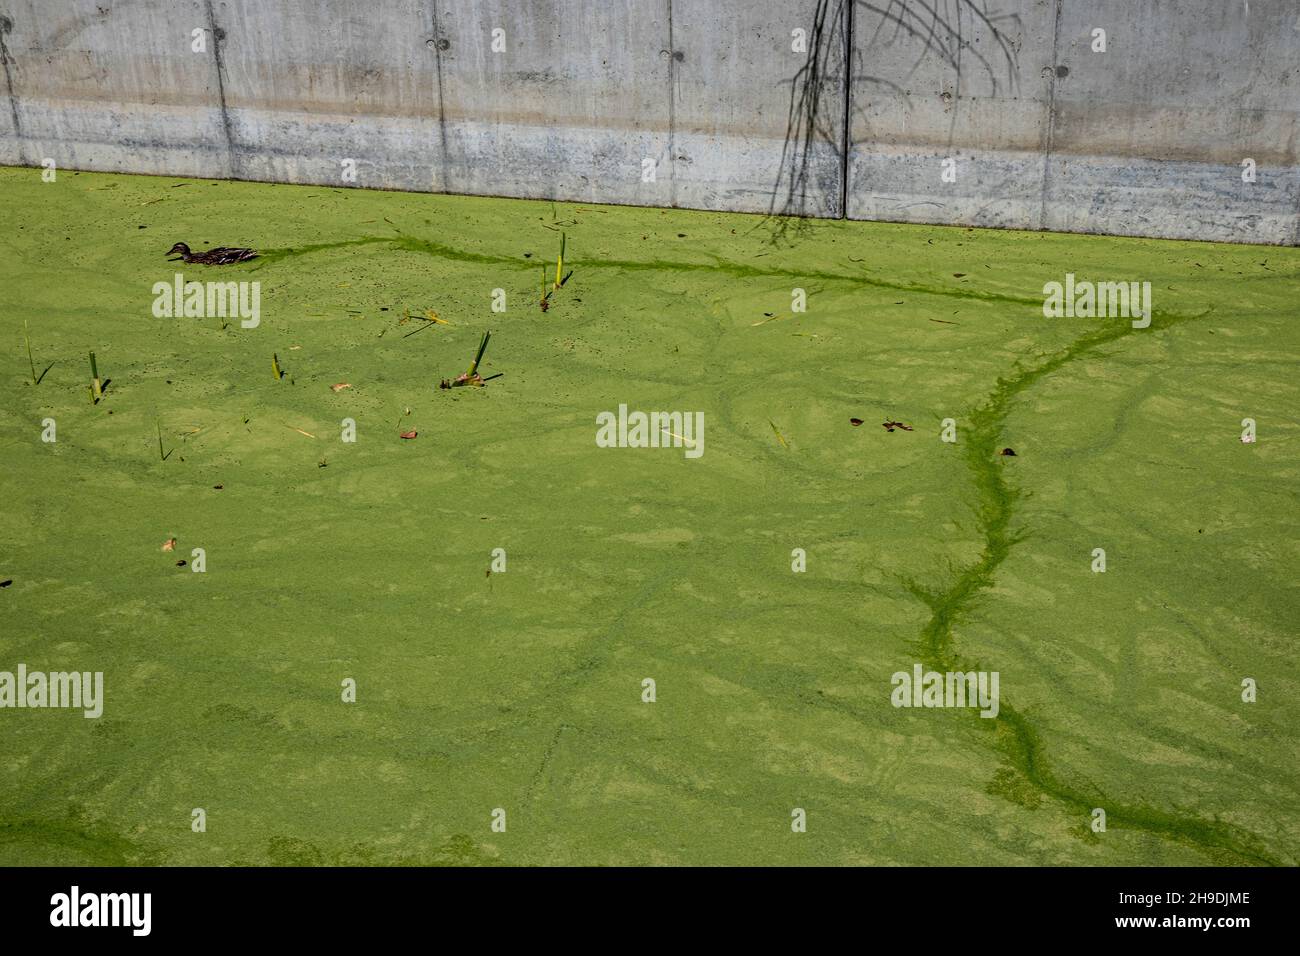 Canard nageant dans des algues Blooms dans le canal d'inondation de Ballona Wetlands, Playa Vista, Los Angeles, Californie, États-Unis Banque D'Images